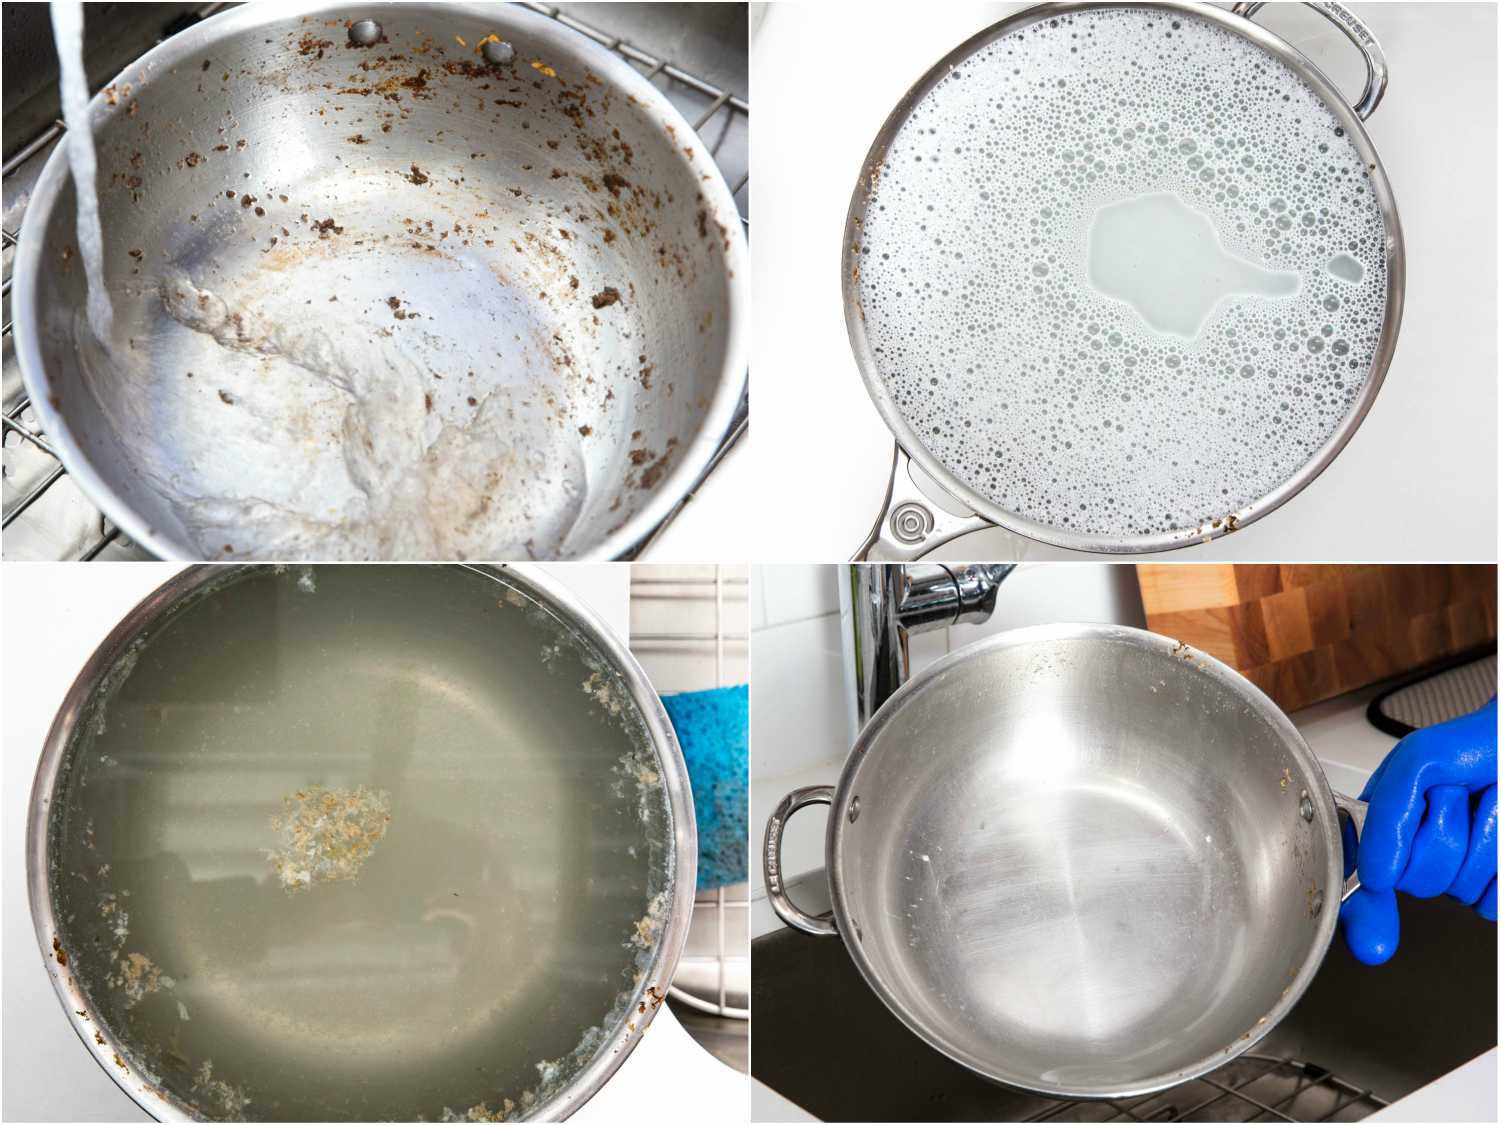 拼贴显示阶段,浸泡一个不锈钢锅:脏锅填满水,用肥皂水补充道,水与食物碎片漂浮在上面,清洗锅